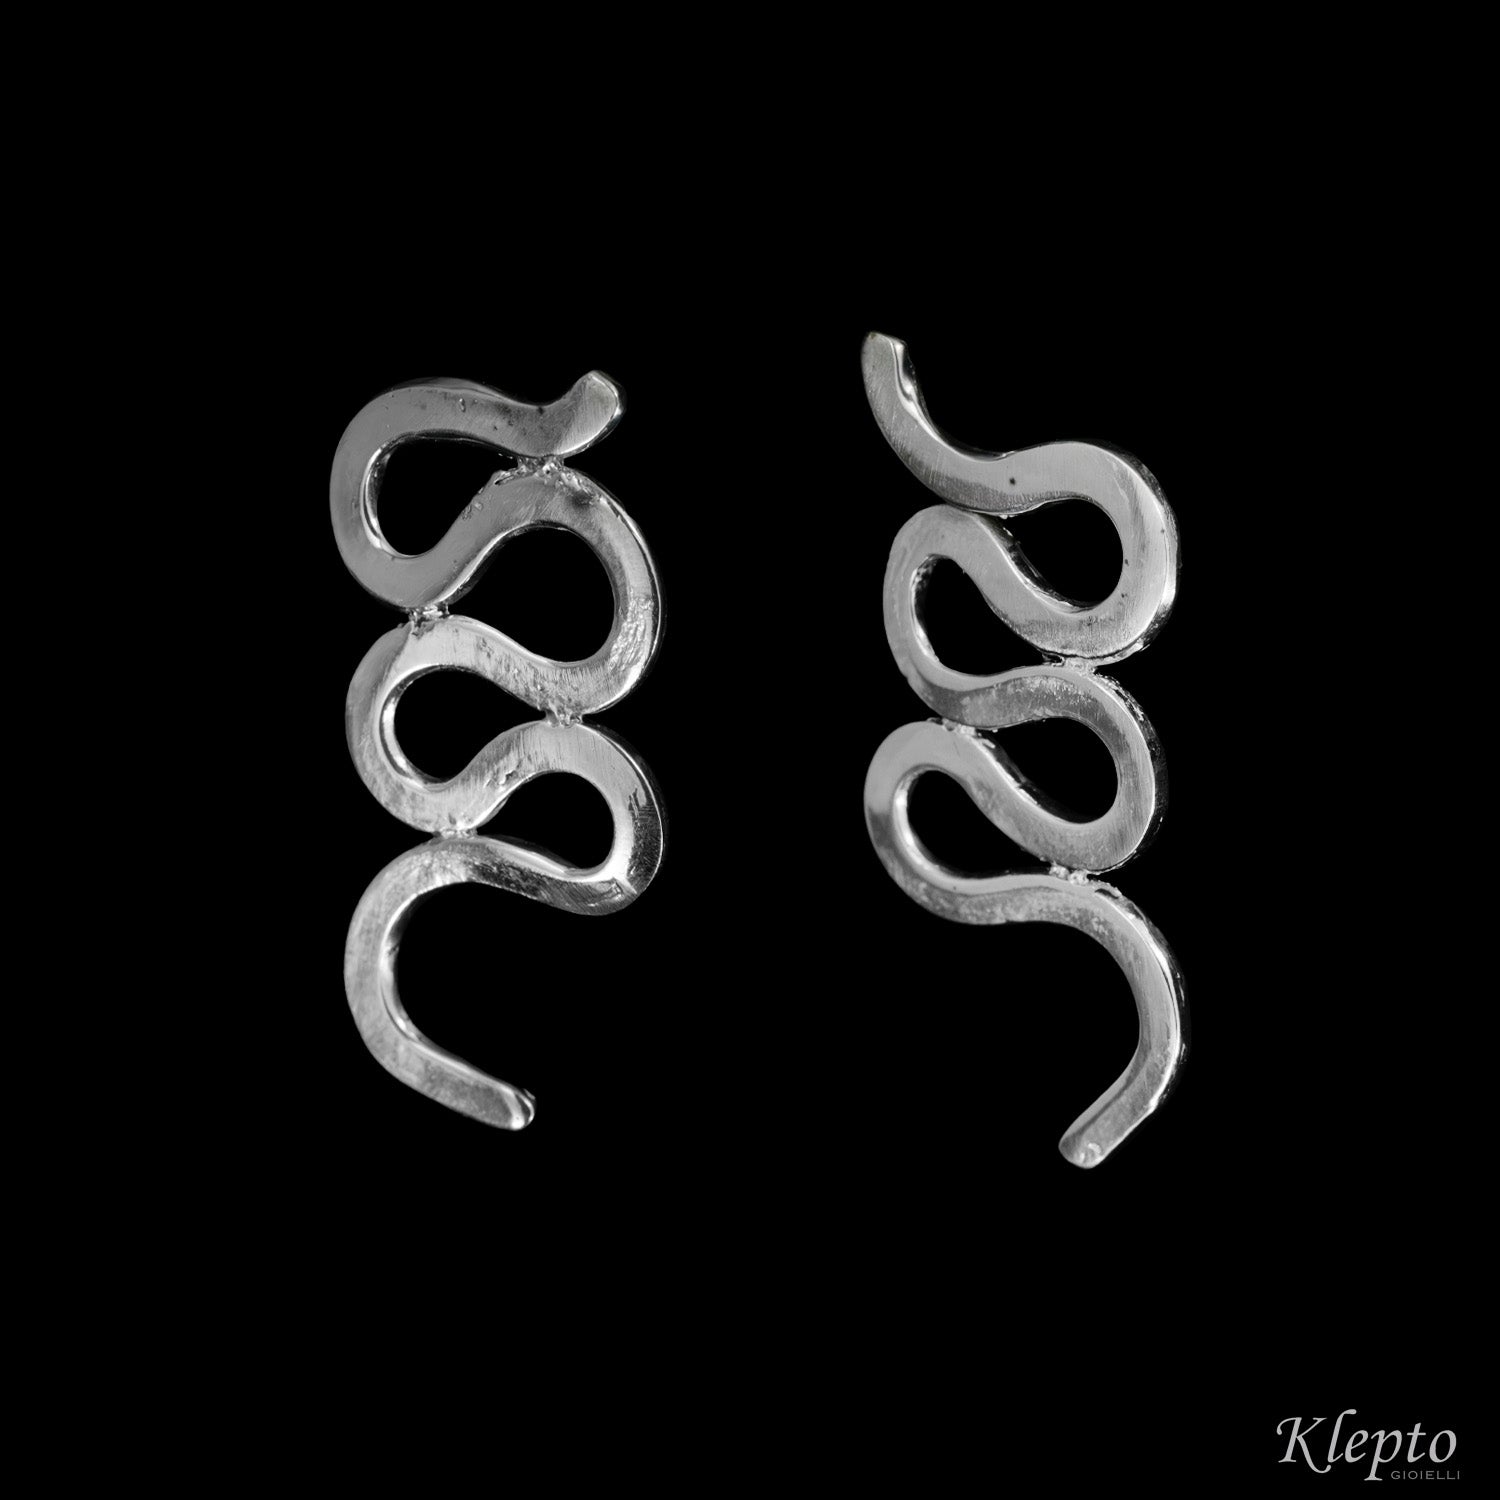 Silnova® silver earrings with wavy wire